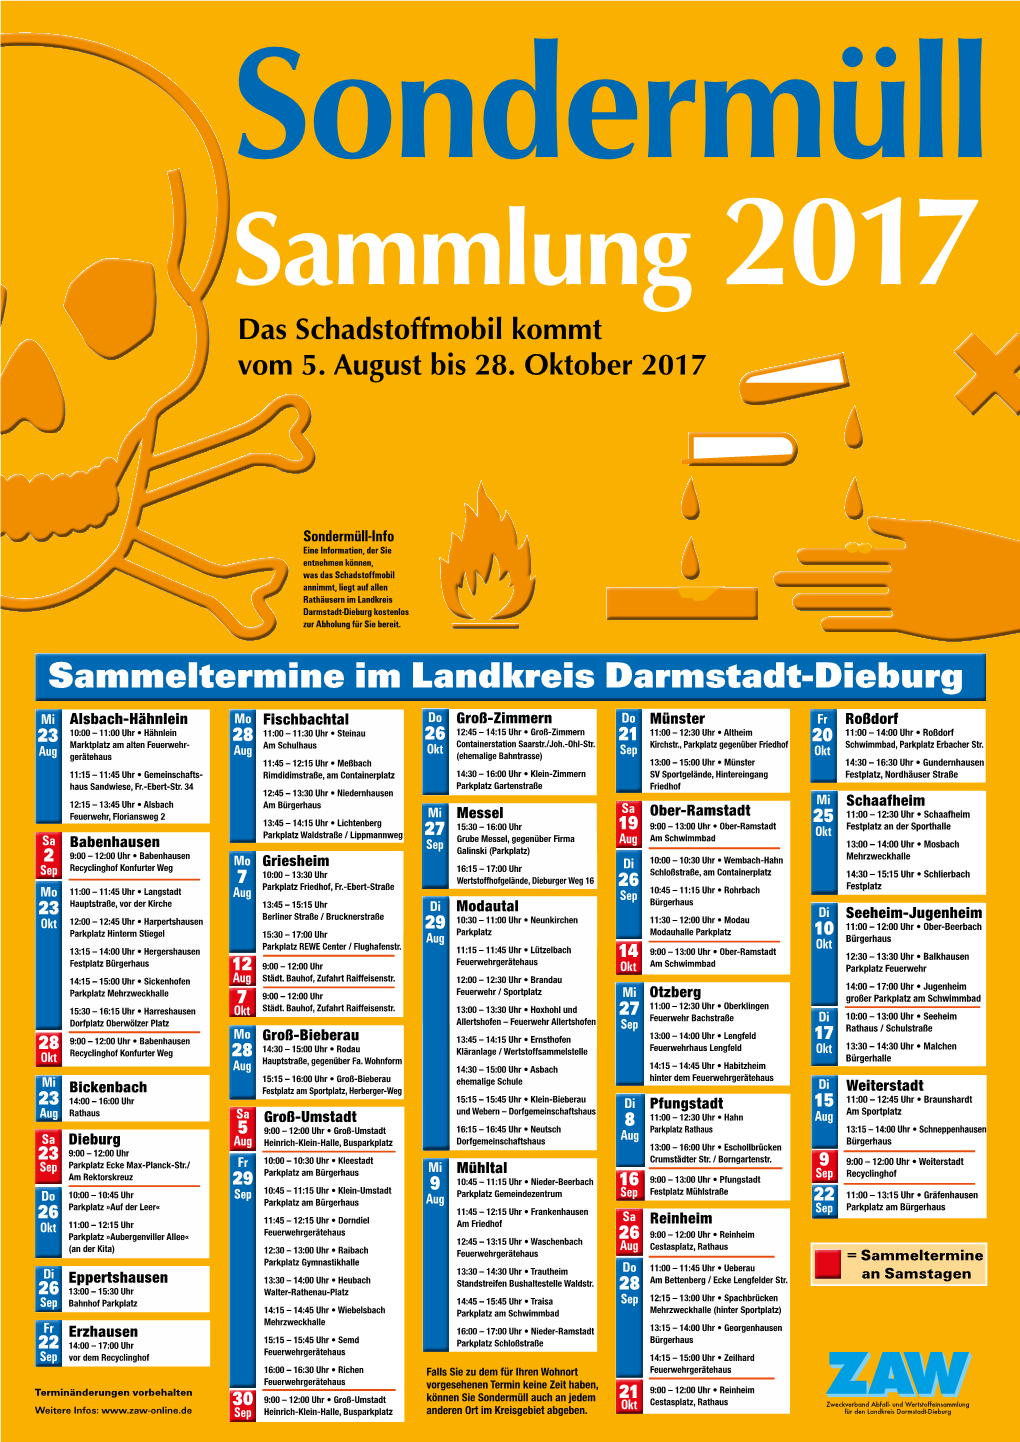 Sammeltermine Im Landkreis Darmstadt-Dieburg